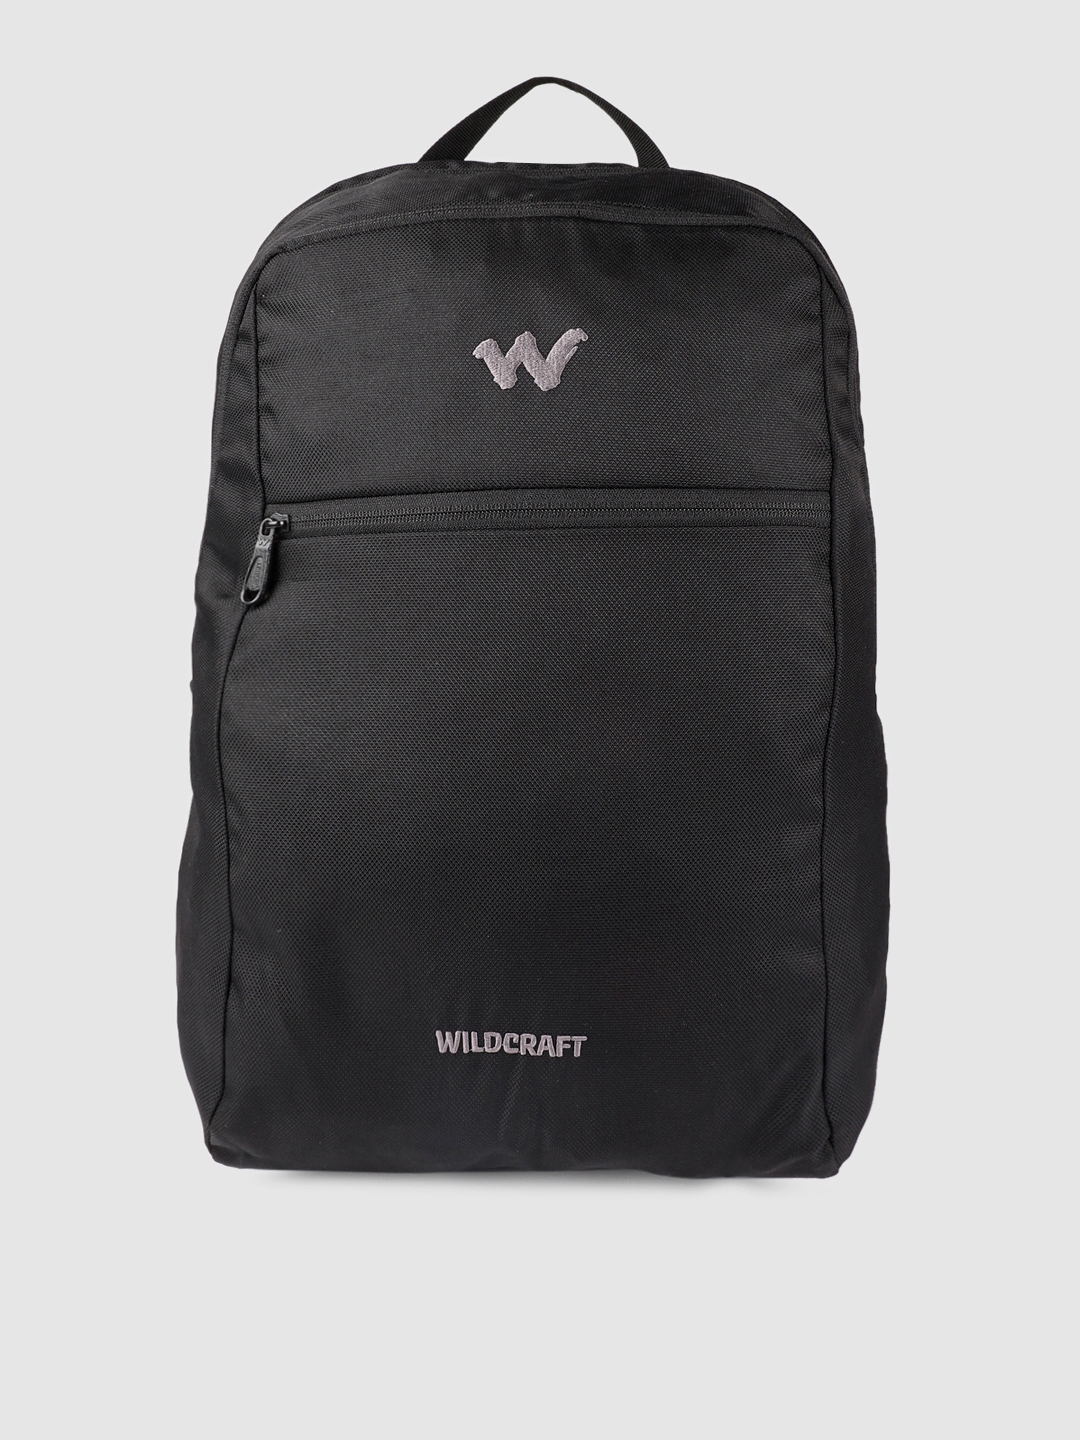 Buy Wildcraft Hopper 1.0 Custom Printed Laptop Backpacks Online